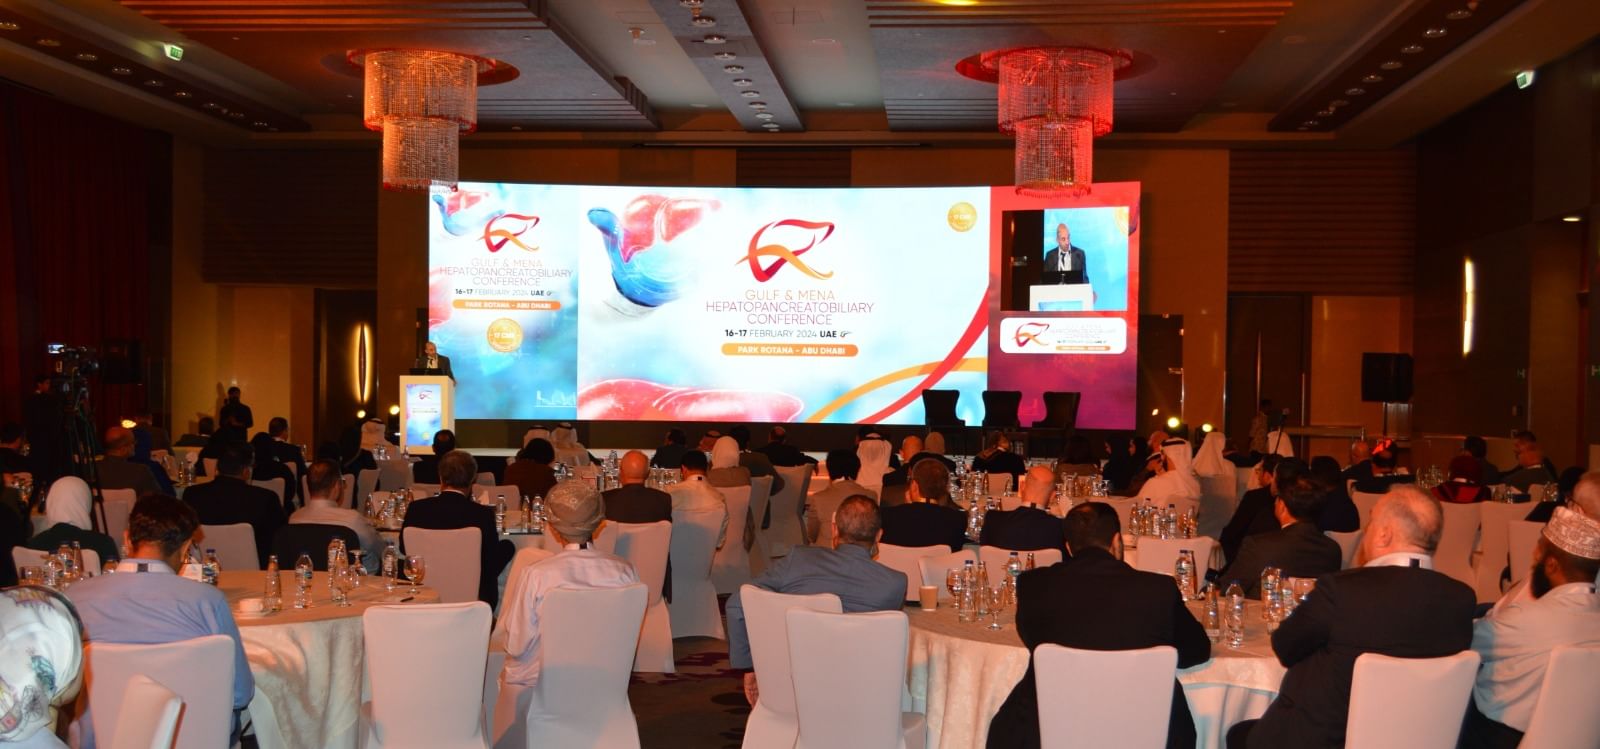 انطلاق فعاليات مؤتمر الخليج والشرق الأوسط لجراحة الكبد والبنكرياس بأبوظبي